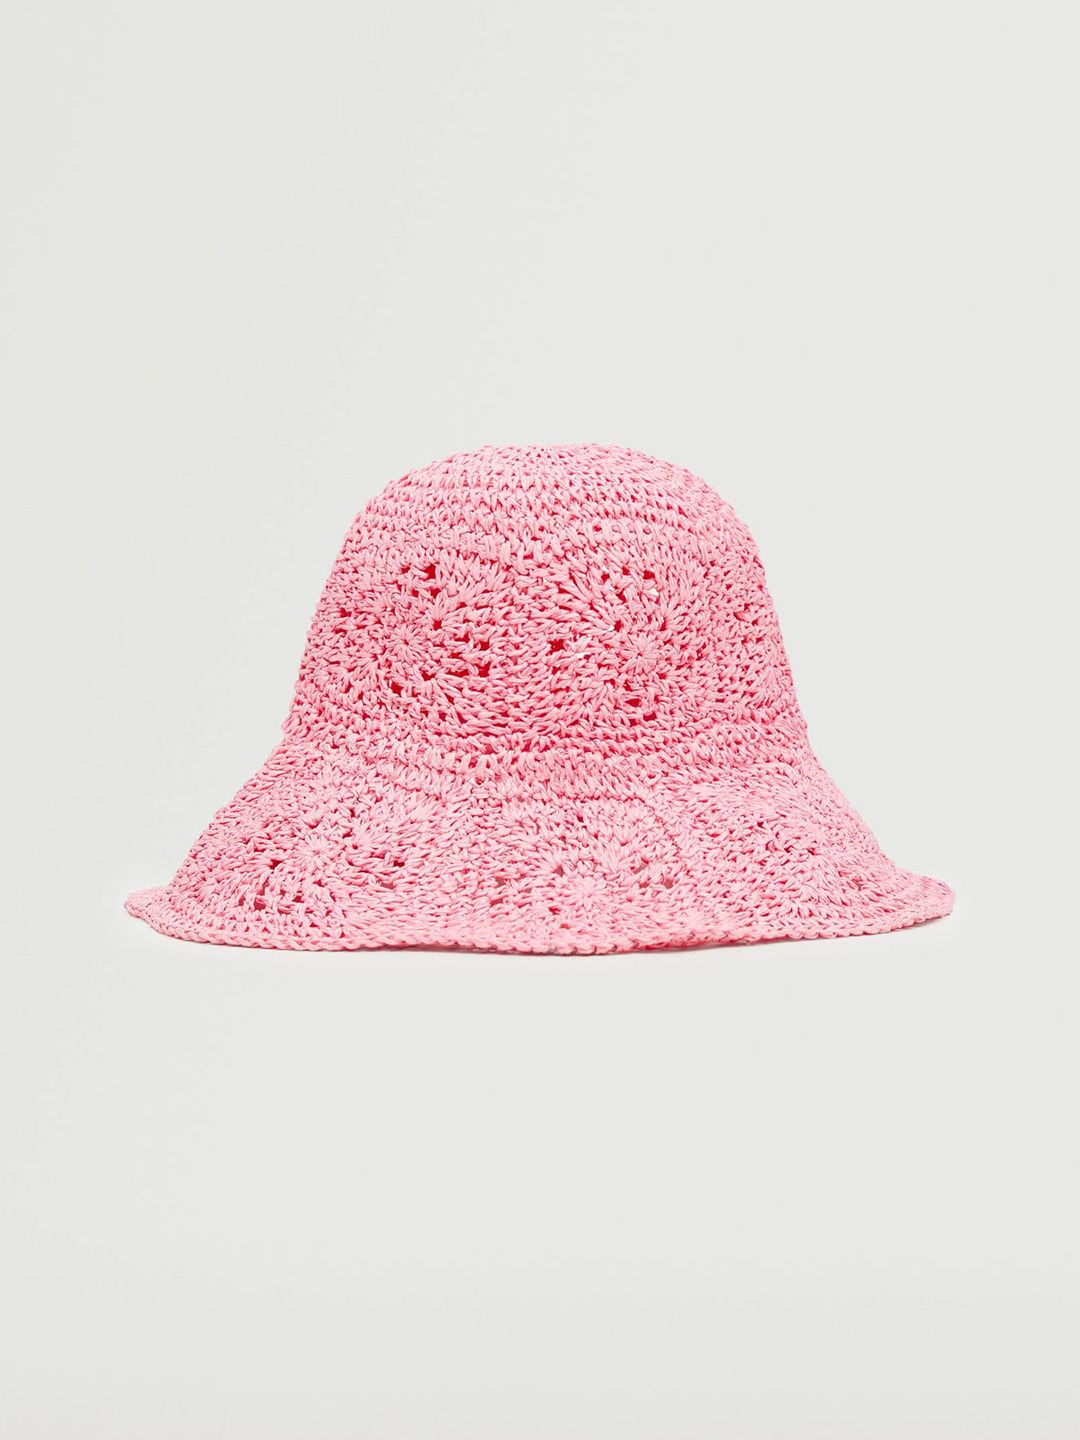 MANGO Women Pink Solid Raffia Braided Bucket Hat Price in India